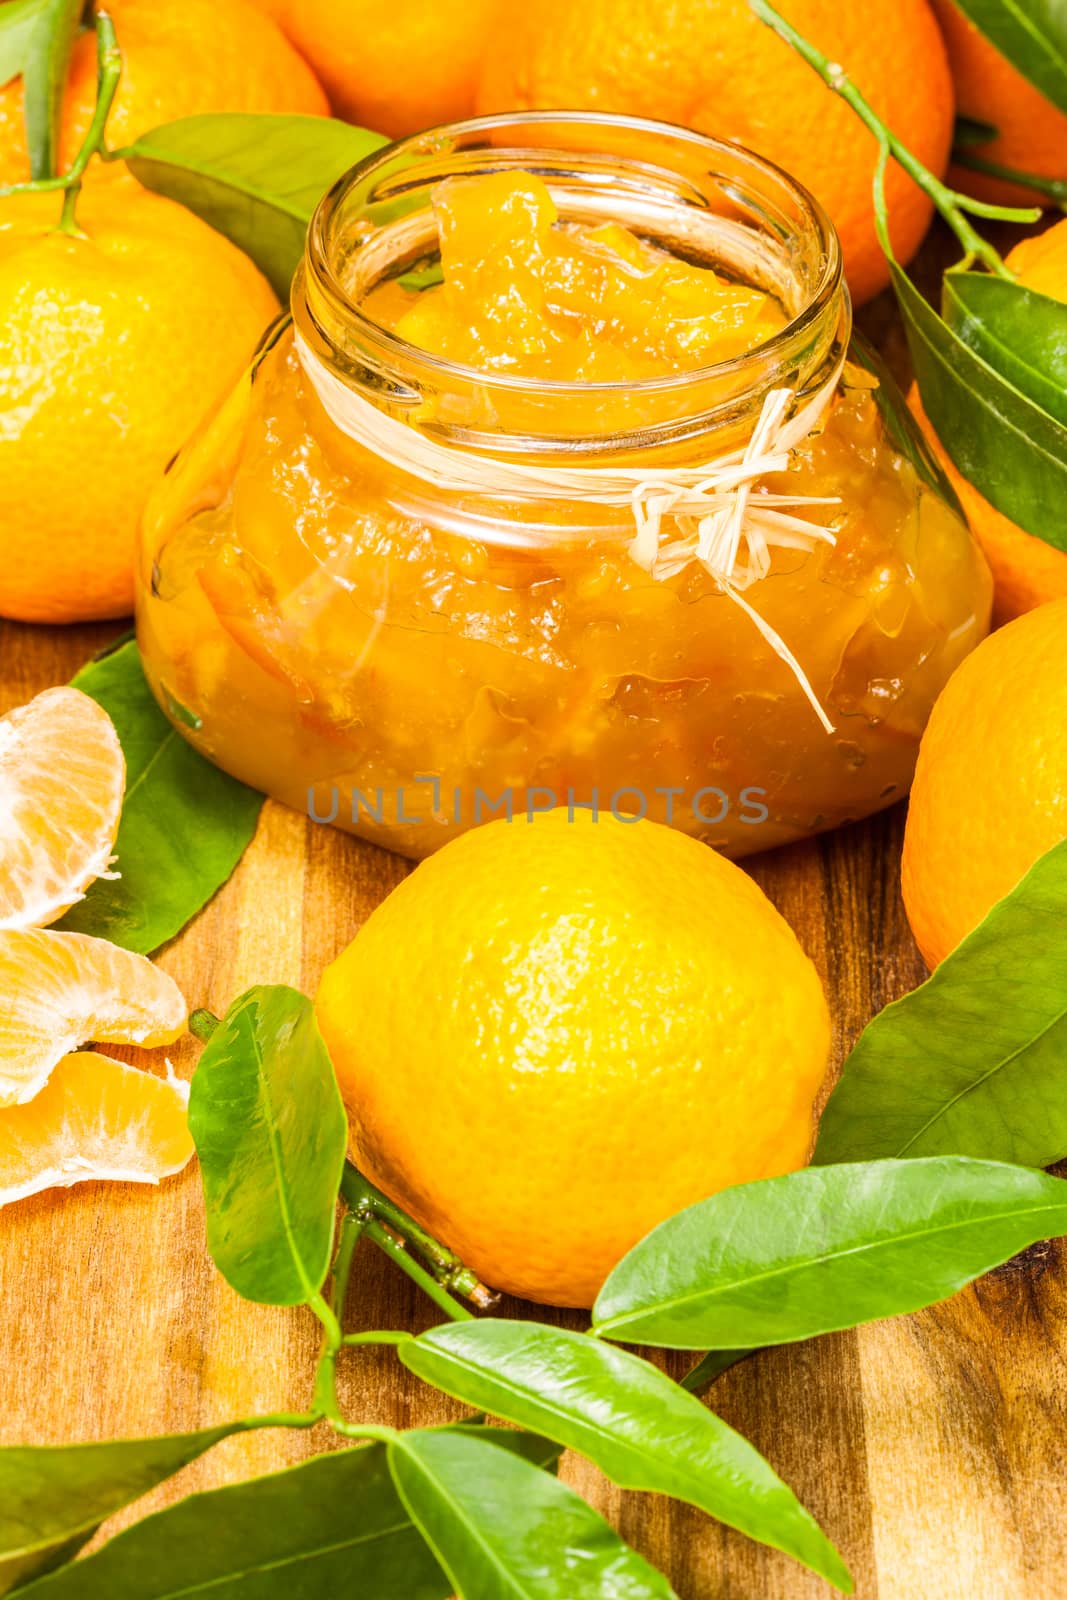 Orange mandarin homemade jam by Slast20